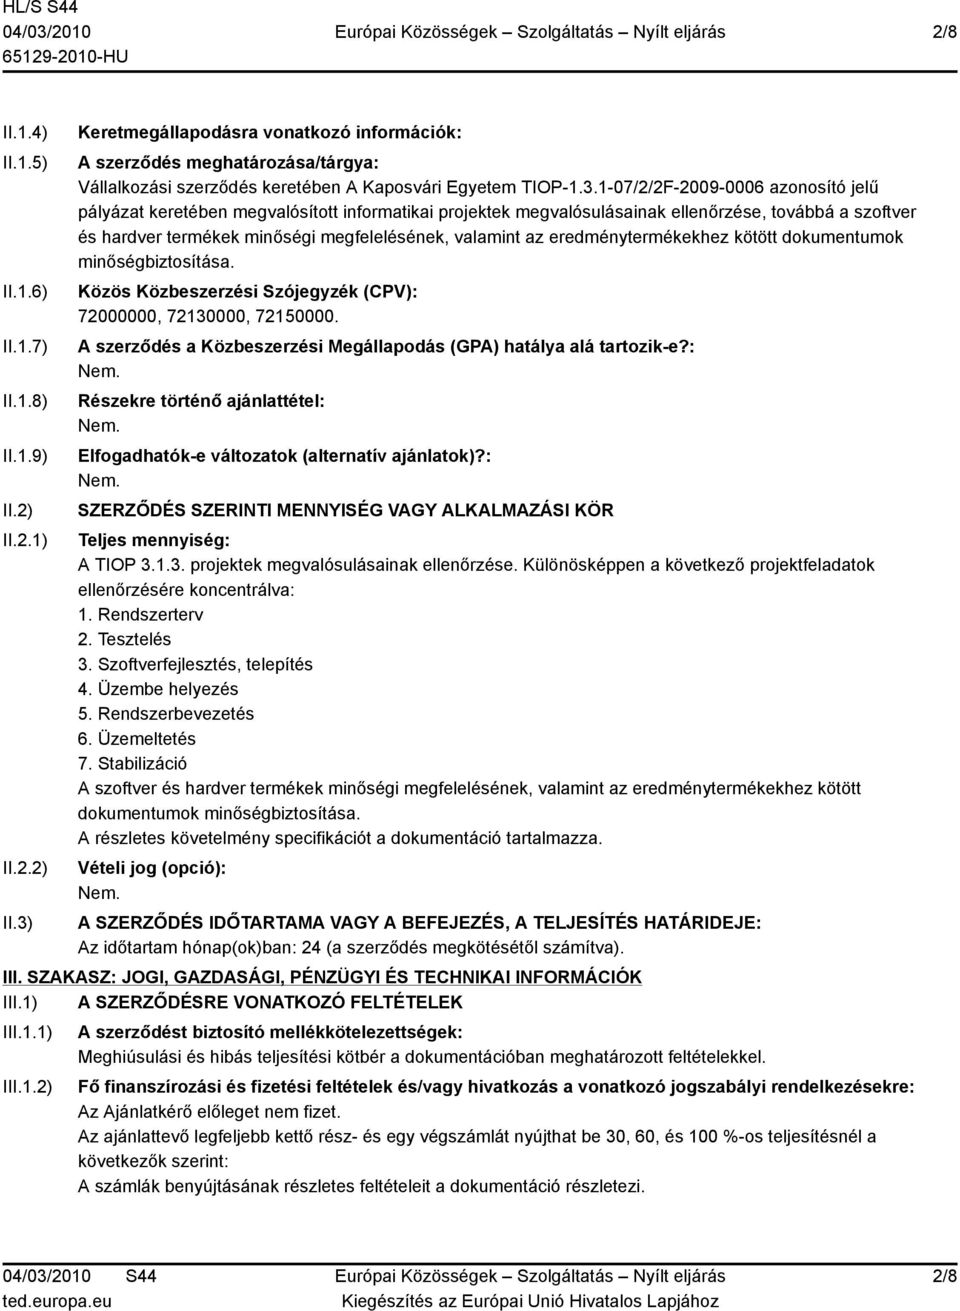 Keretmegállapodásra vonatkozó információk: A szerződés meghatározása/tárgya: Vállalkozási szerződés keretében A Kaposvári Egyetem TIOP-1.3.